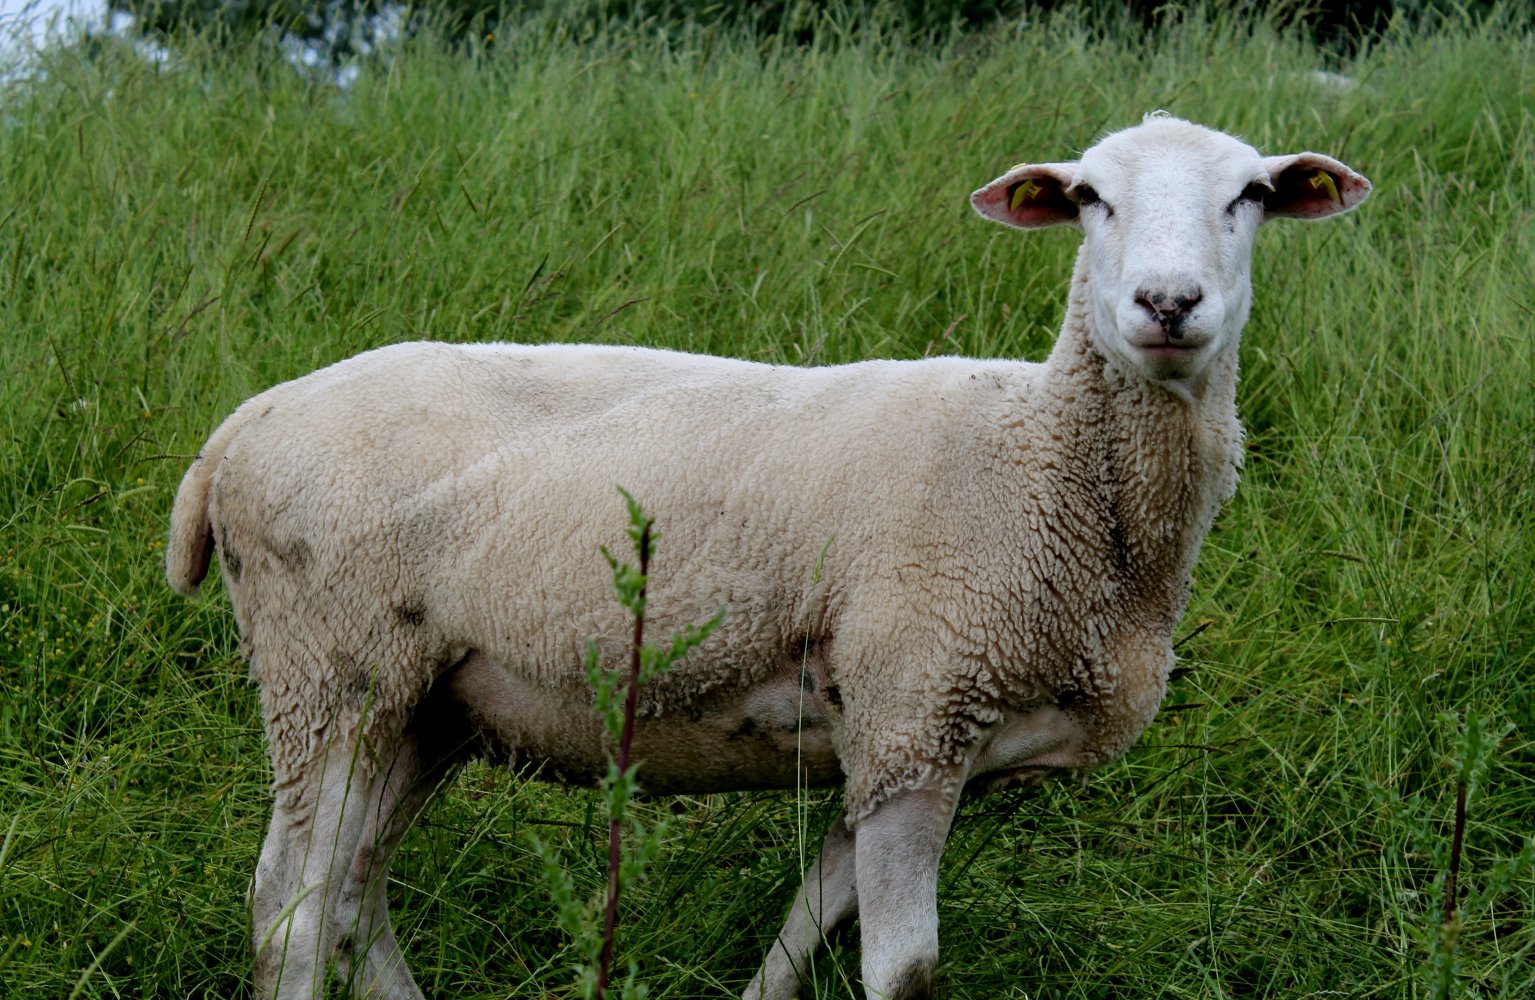  Schaf auf Wiese 